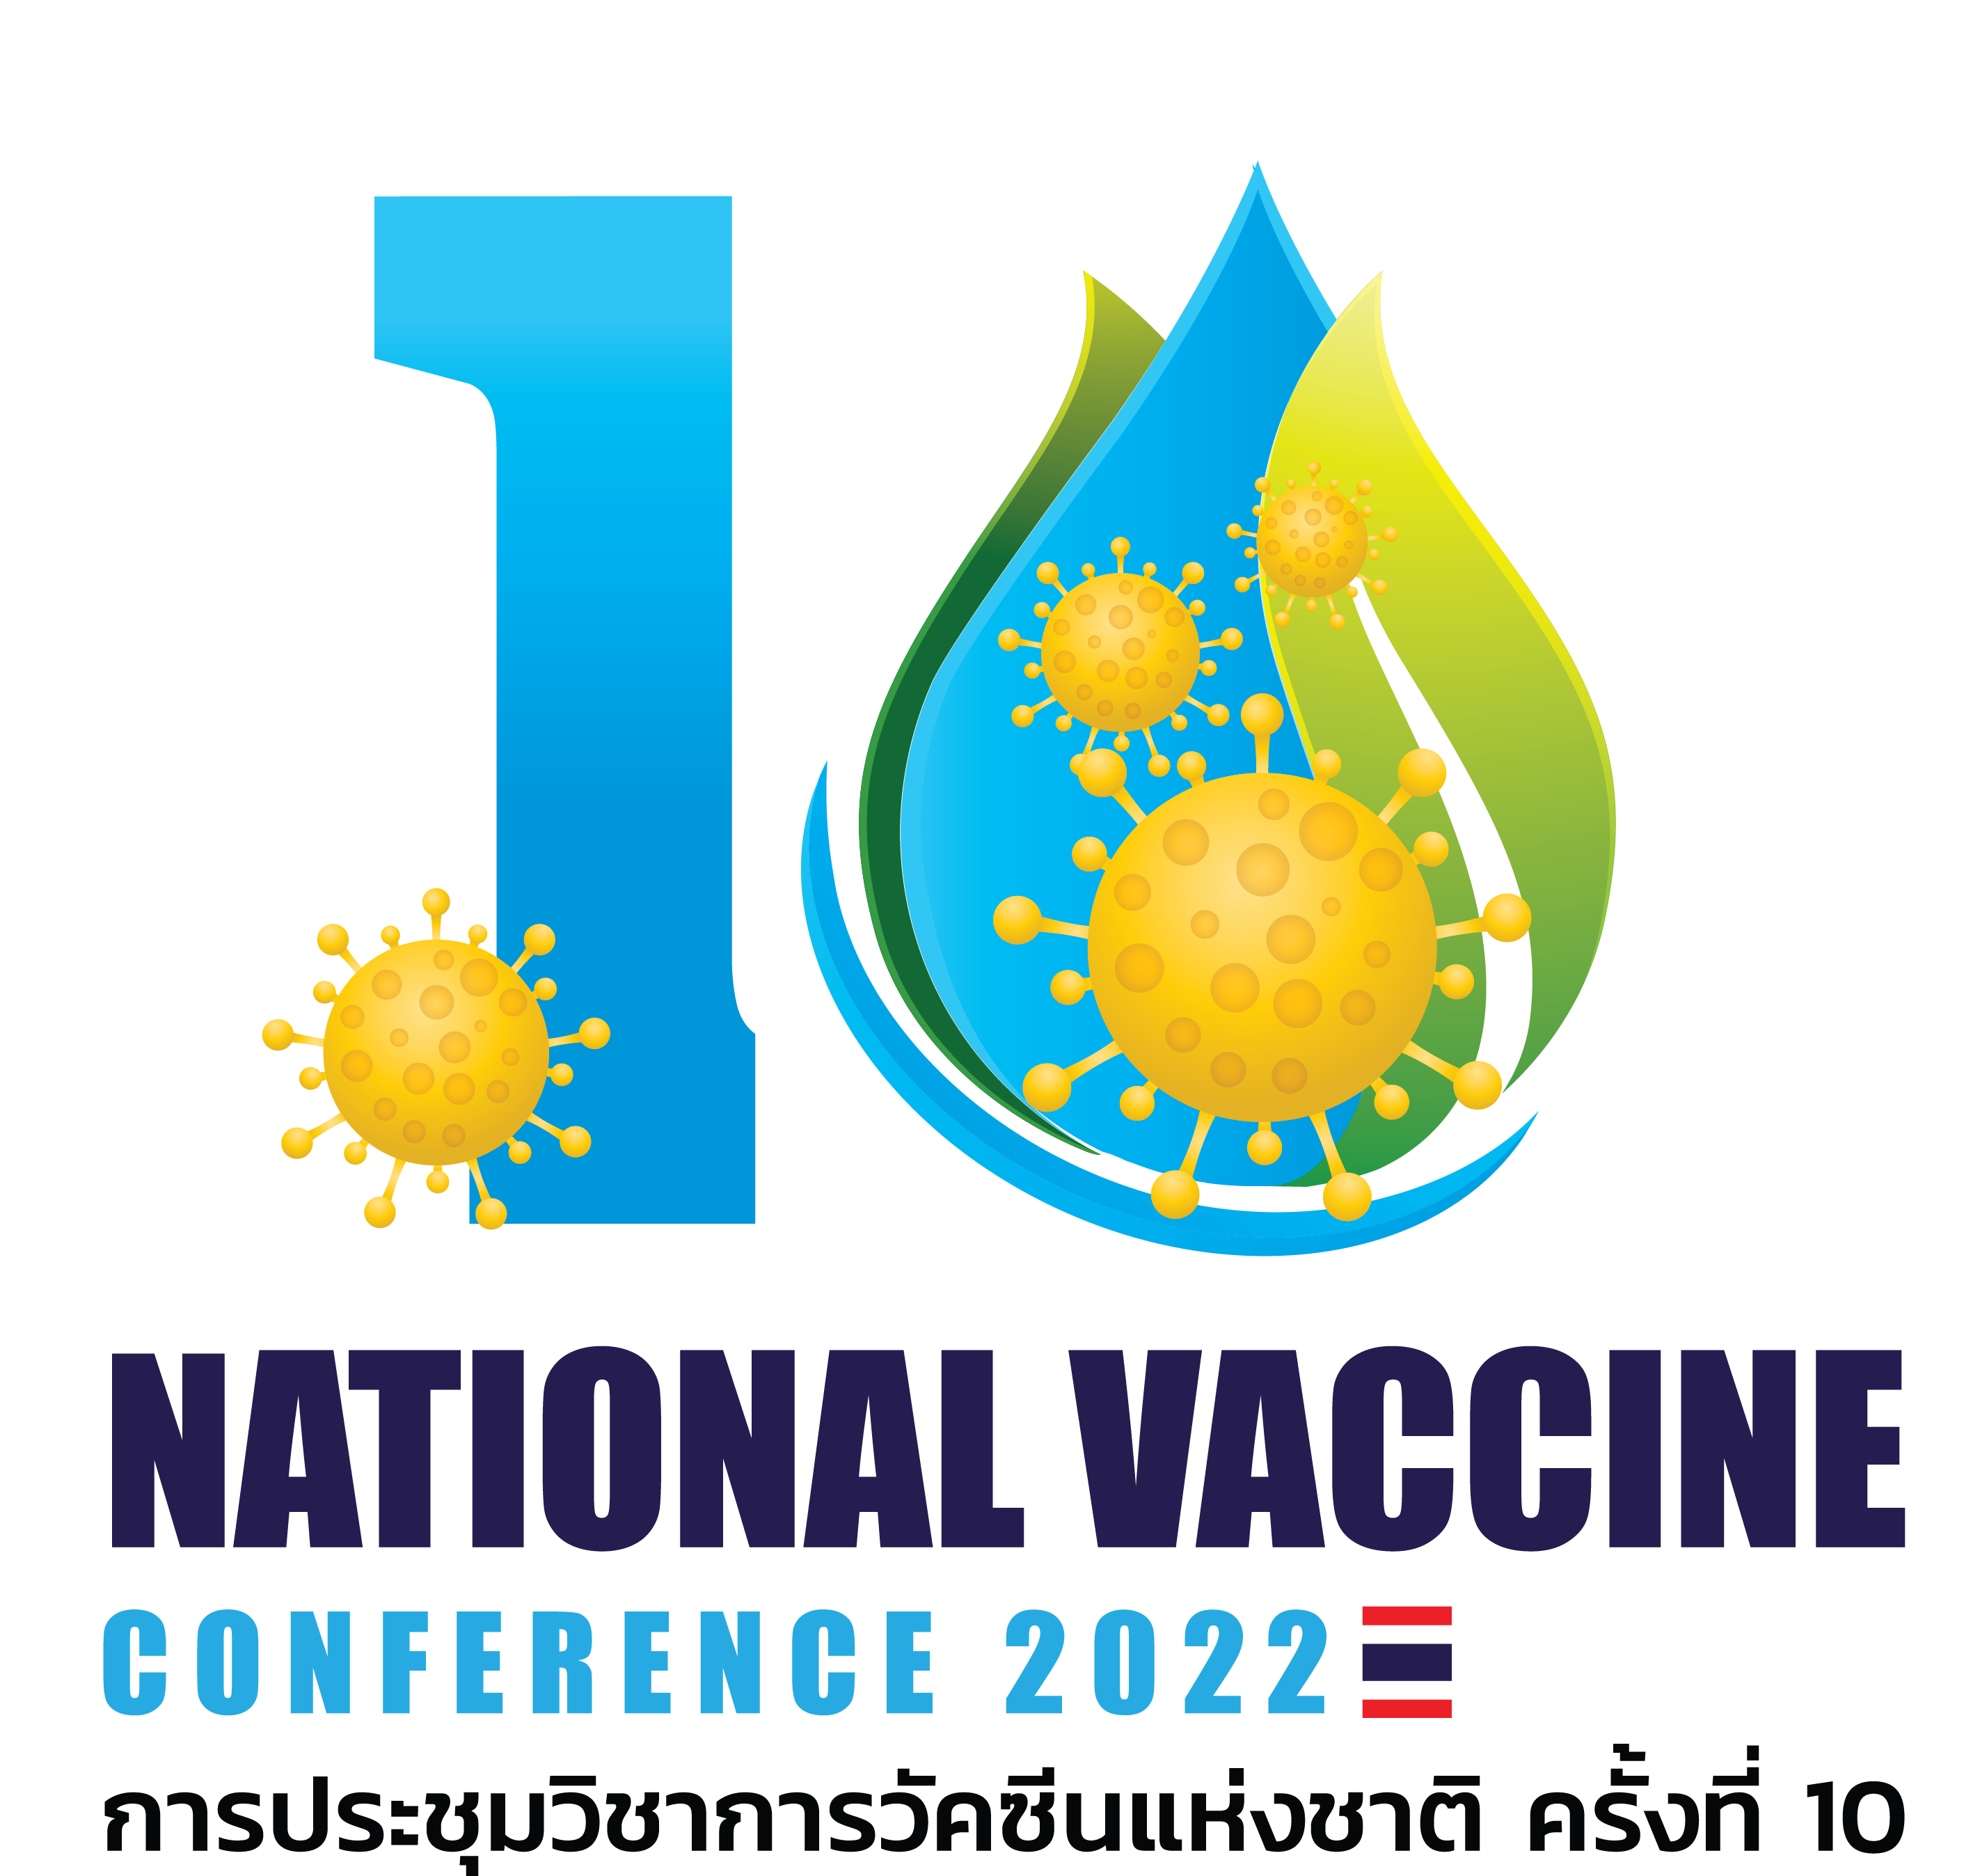 ประชุมวิชาการวัคซีนแห่งชาติ ครั้งที่ 10 ระหว่างวันที่ 16-18 มี.ค.65